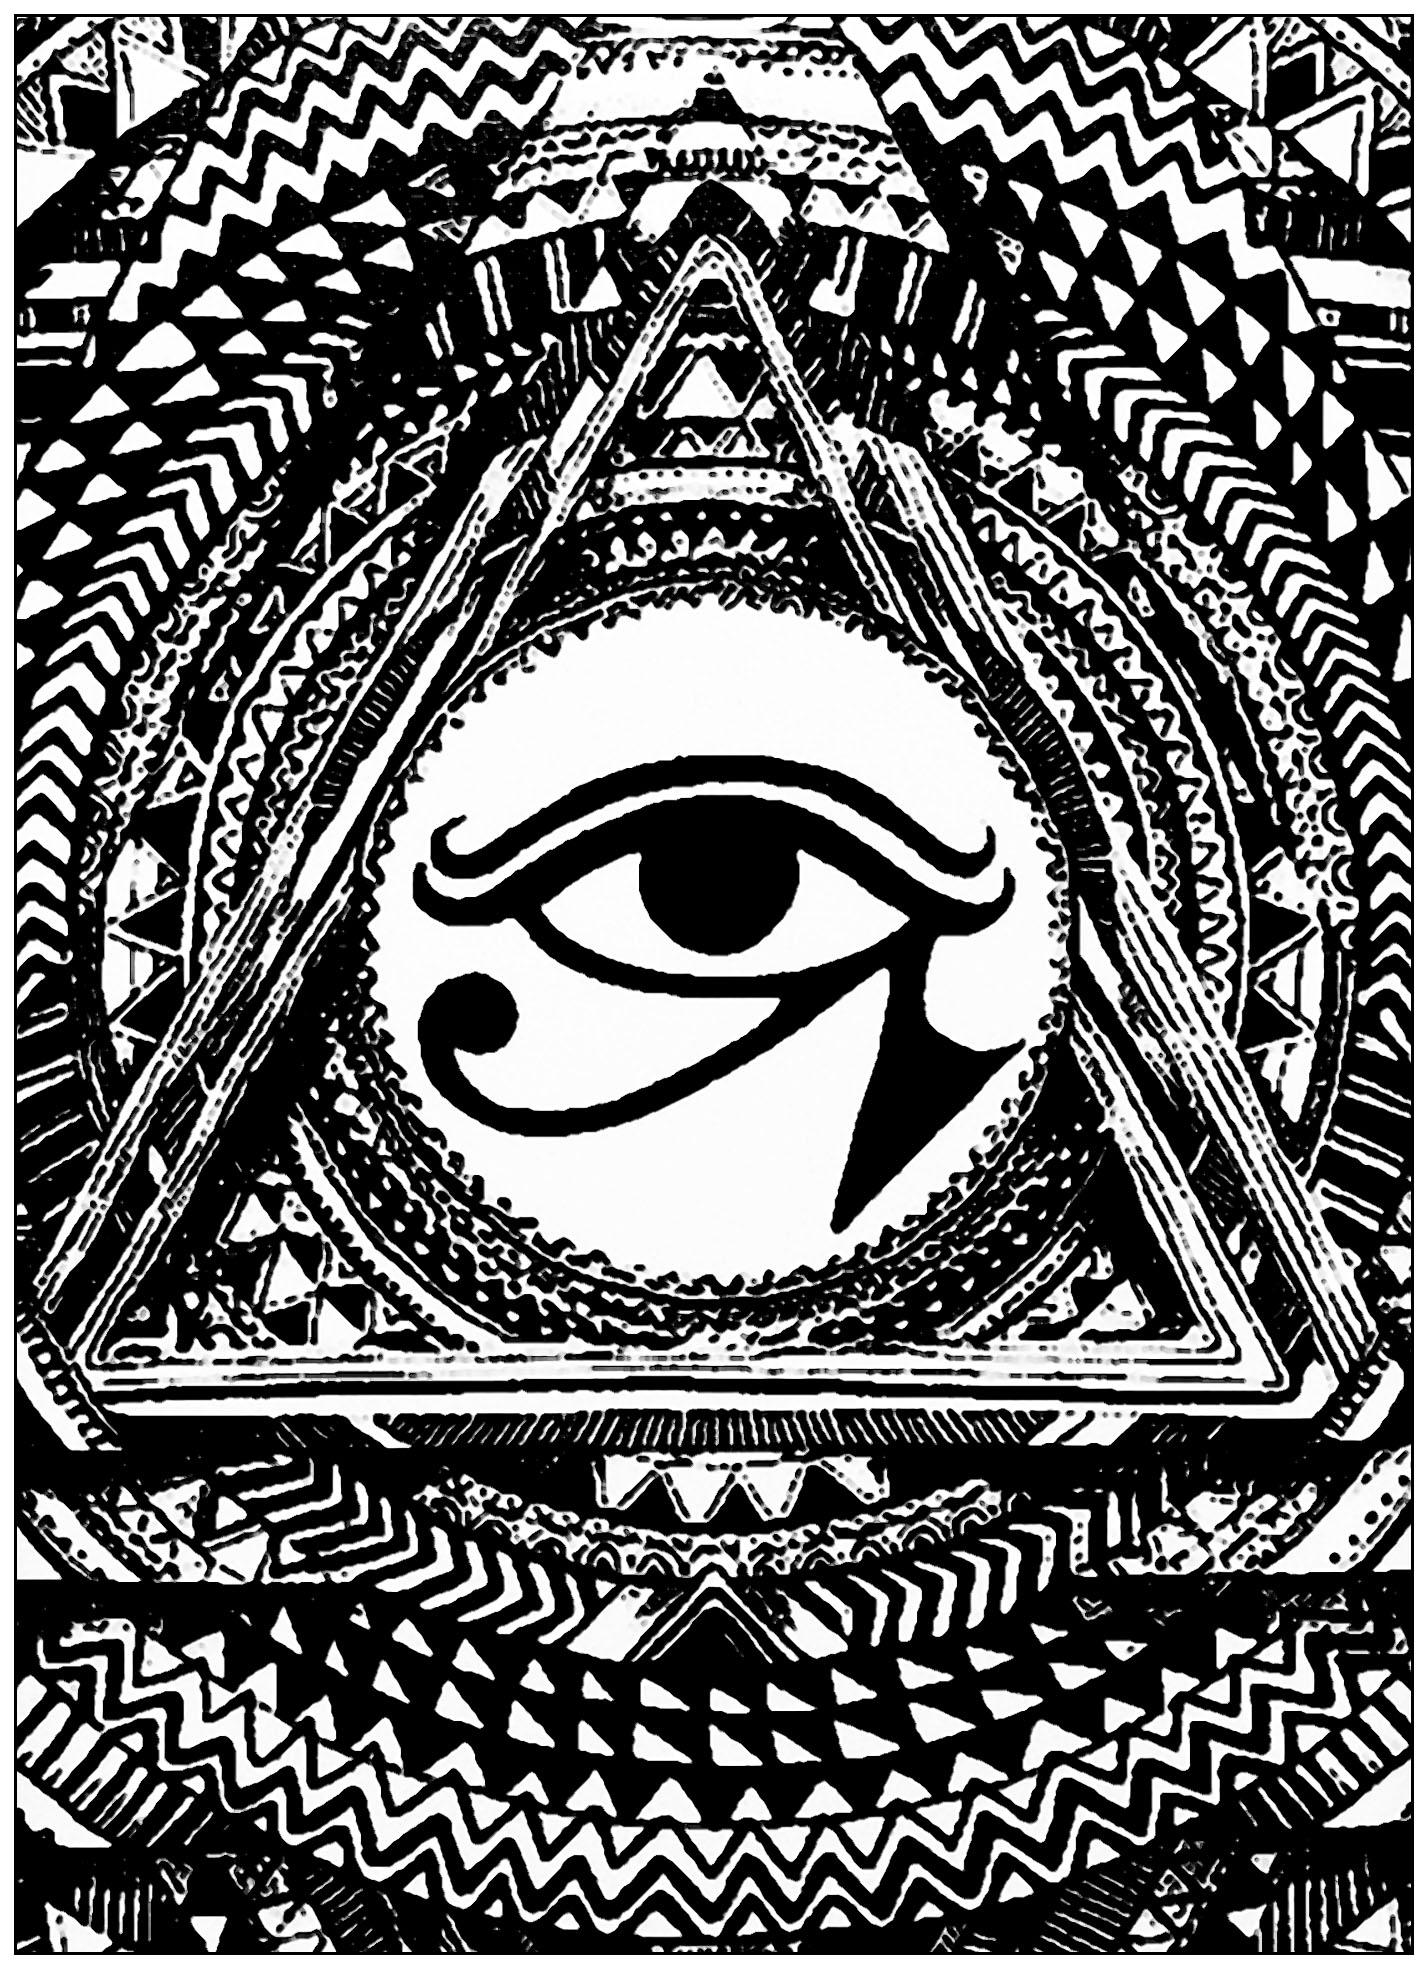 Auge des Horus in einem DreieckDas Auge des Horus wurde als Zeichen für Wohlstand und Schutz verwendet, abgeleitet aus dem Mythos von Isis und Osiris. Dieses Symbol weist eine erstaunliche Verbindung zwischen neuroanatomischer Struktur und Funktion auf.